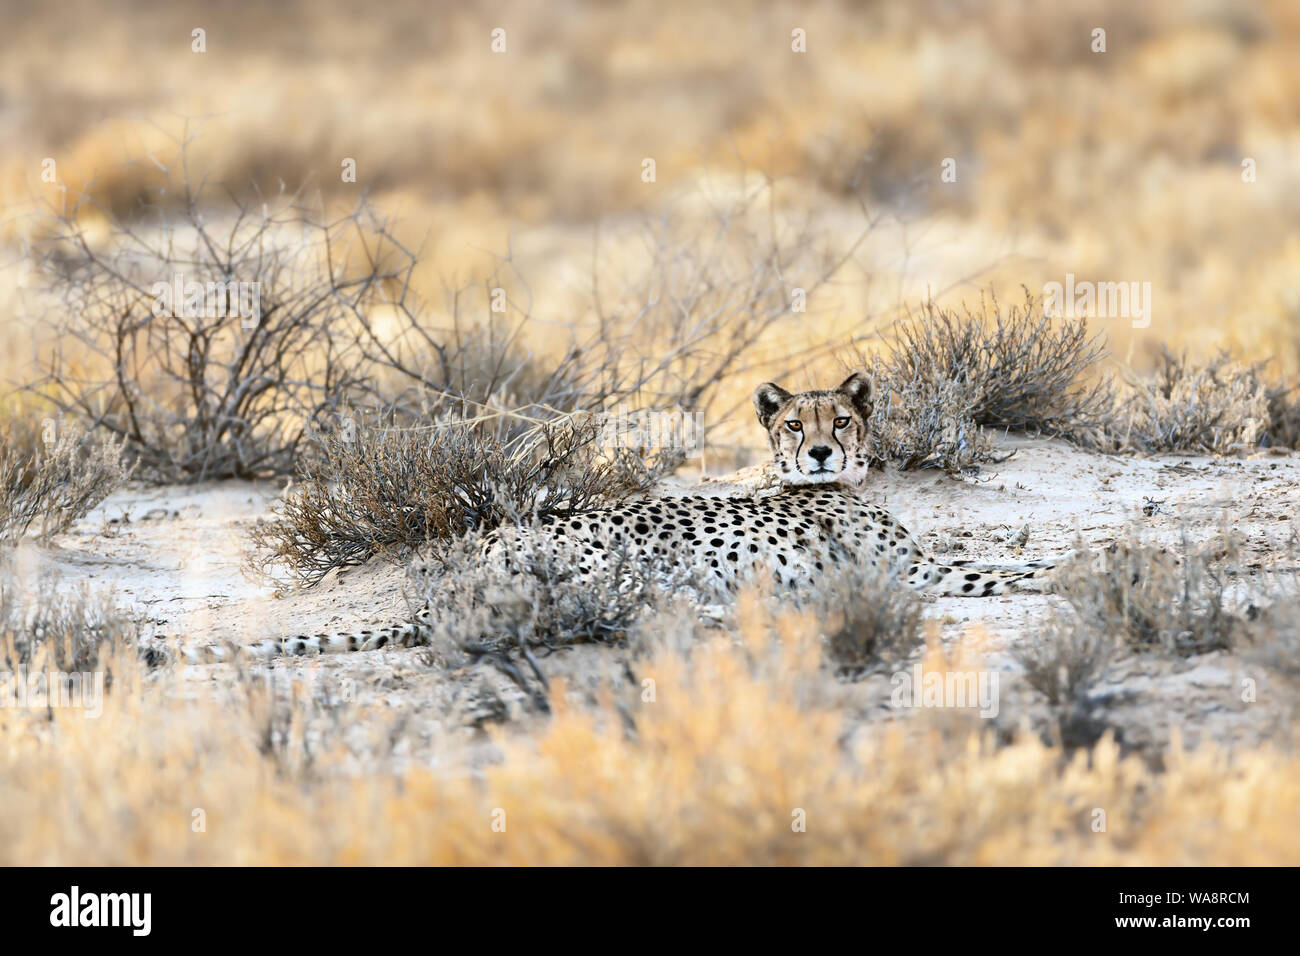 Gepardin aufliegen im Gras des Kgalagadi während der Morgen nach einer Jagd, der gerade in die Kamera schaut. Acinonyx jubatus, Stockfoto